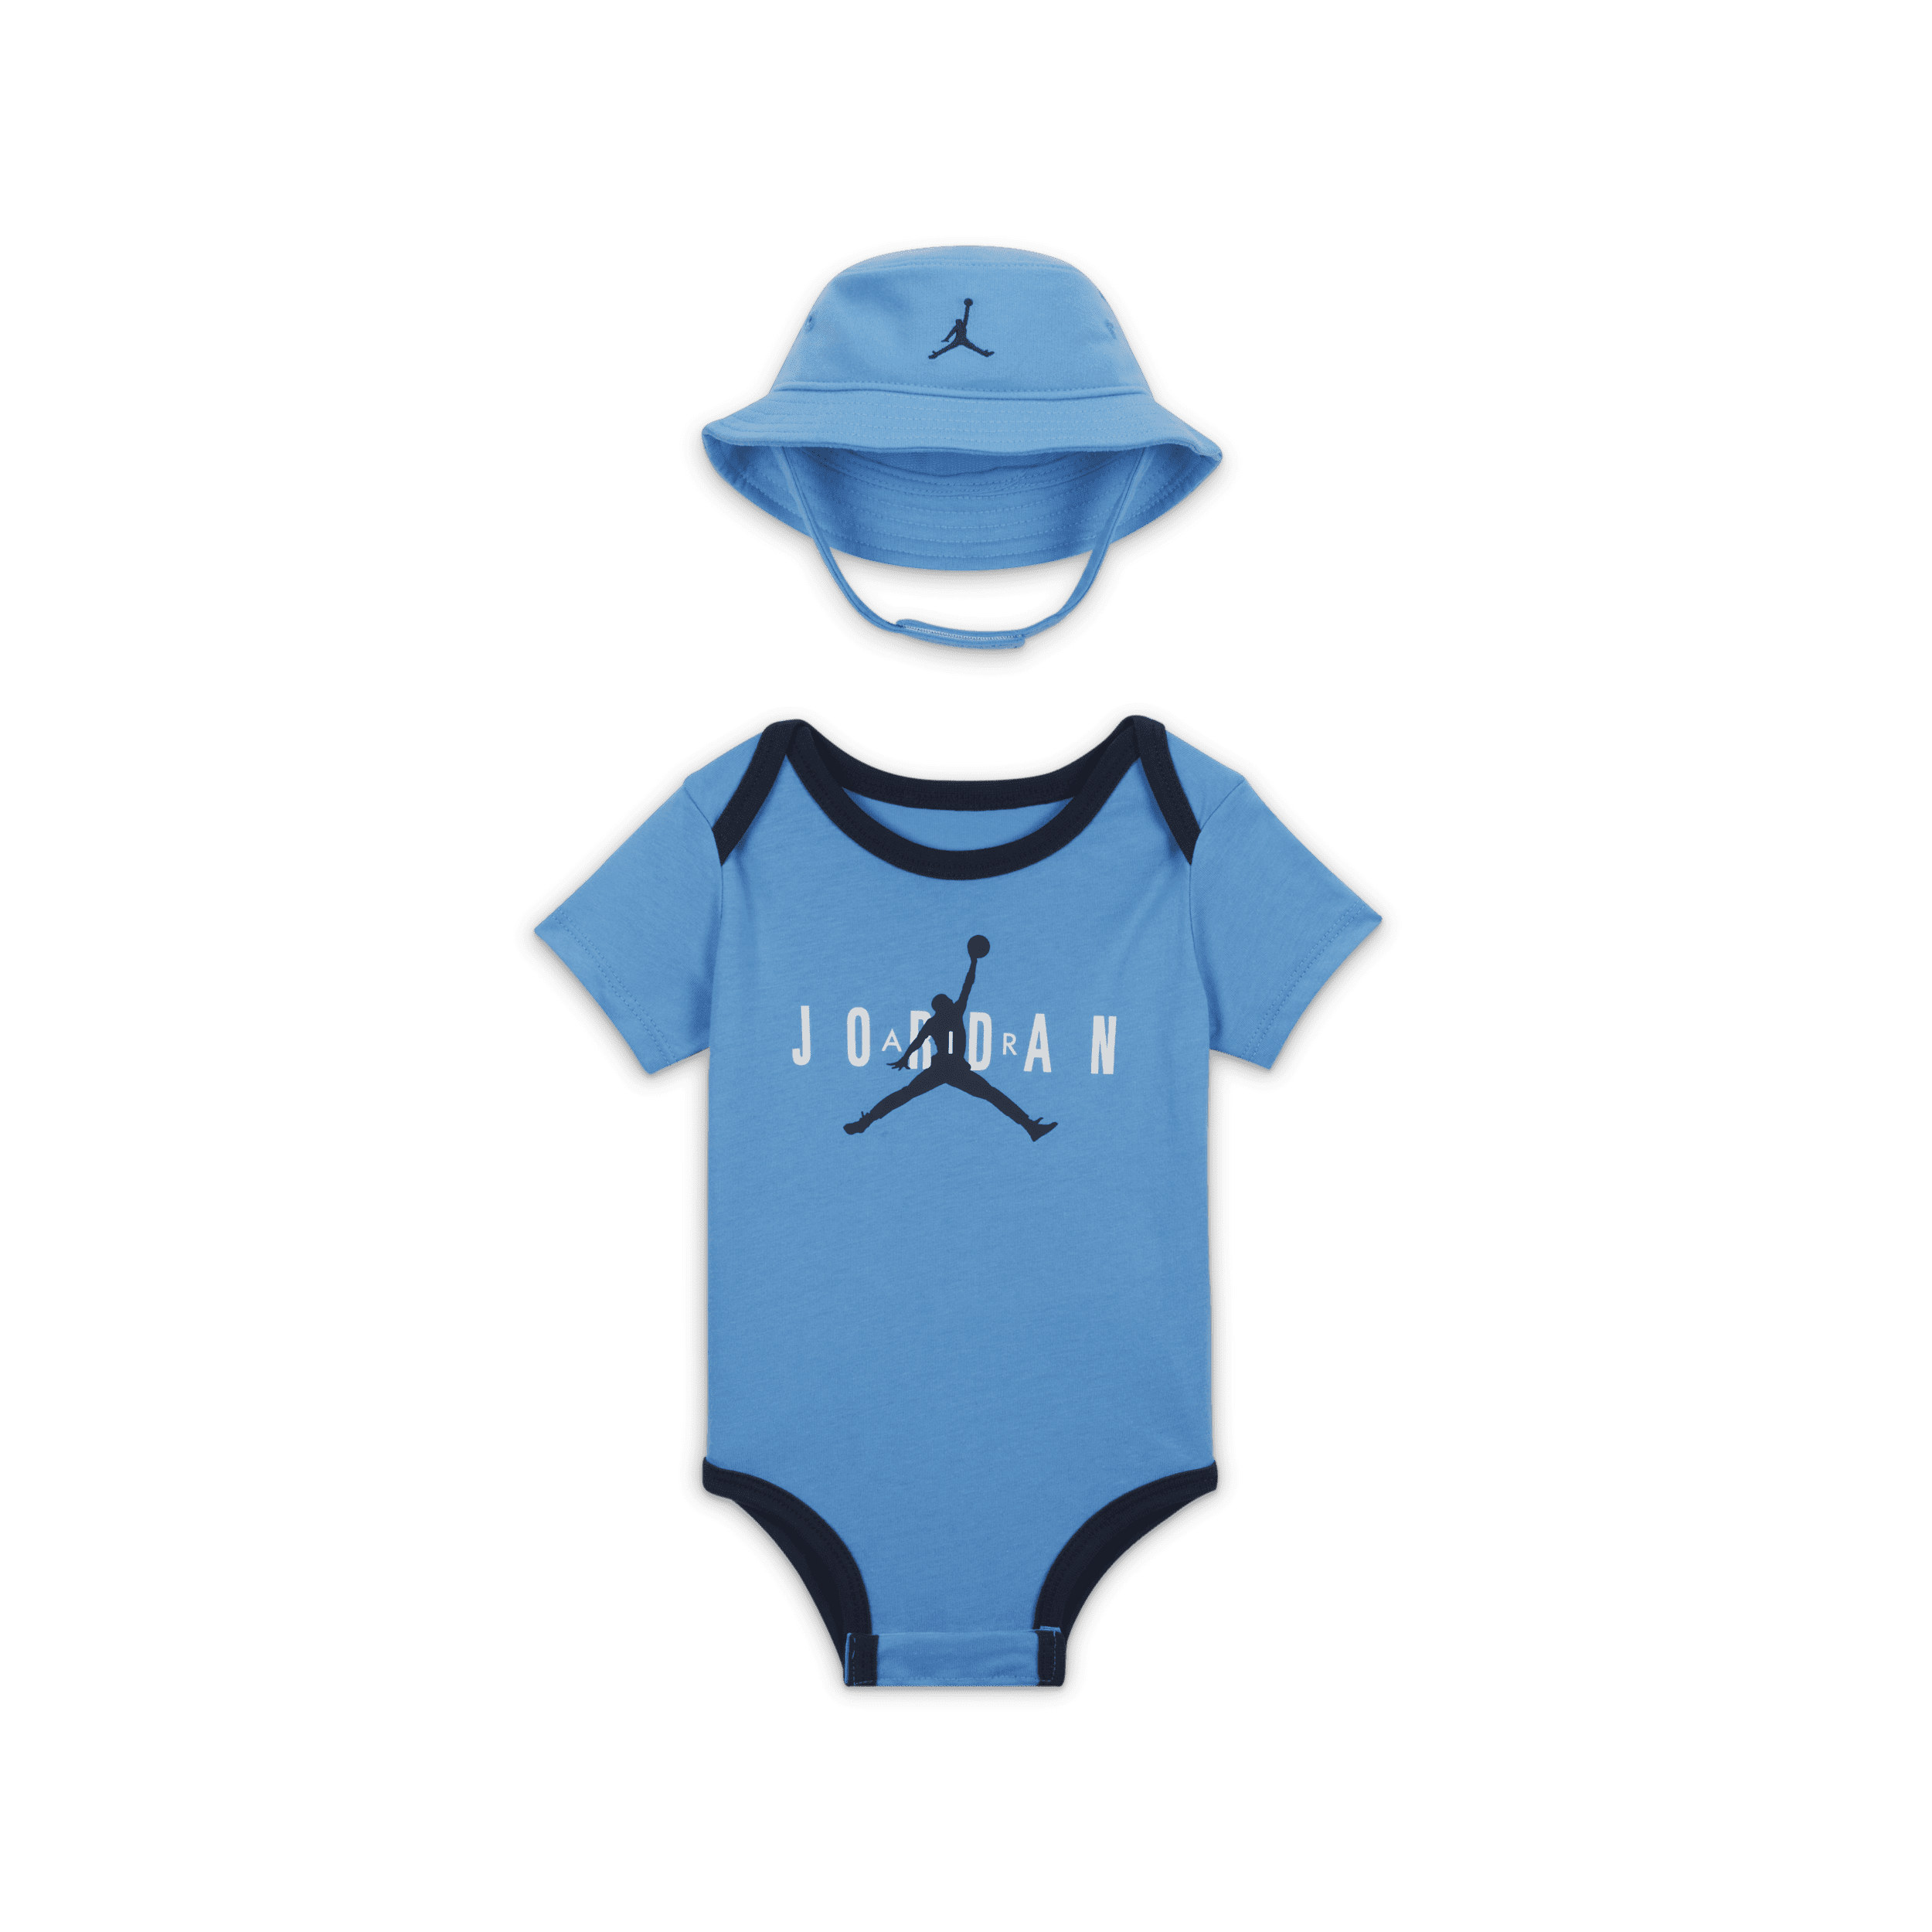 Jordan Jumpman Bucket Hat and Bodysuit Set Rompertjesset voor baby's (0-6 maanden) - Blauw